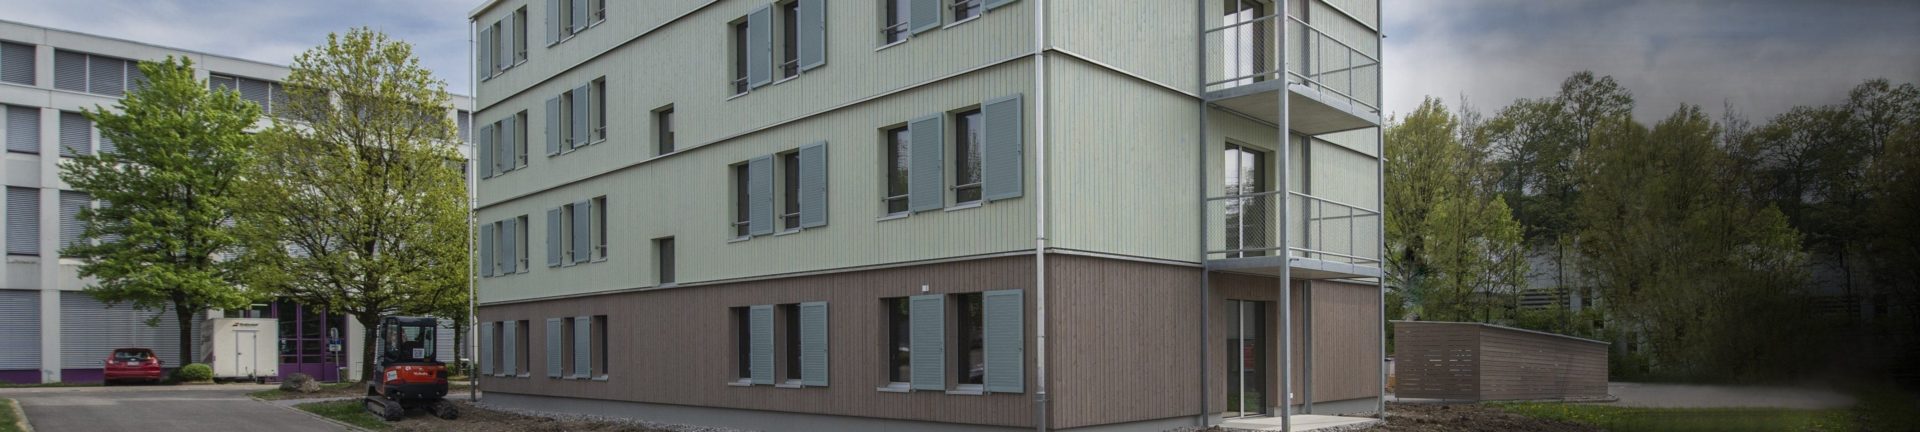 Neubau der Asylunterkunft Undermüli in Fehraltorf Featured Image